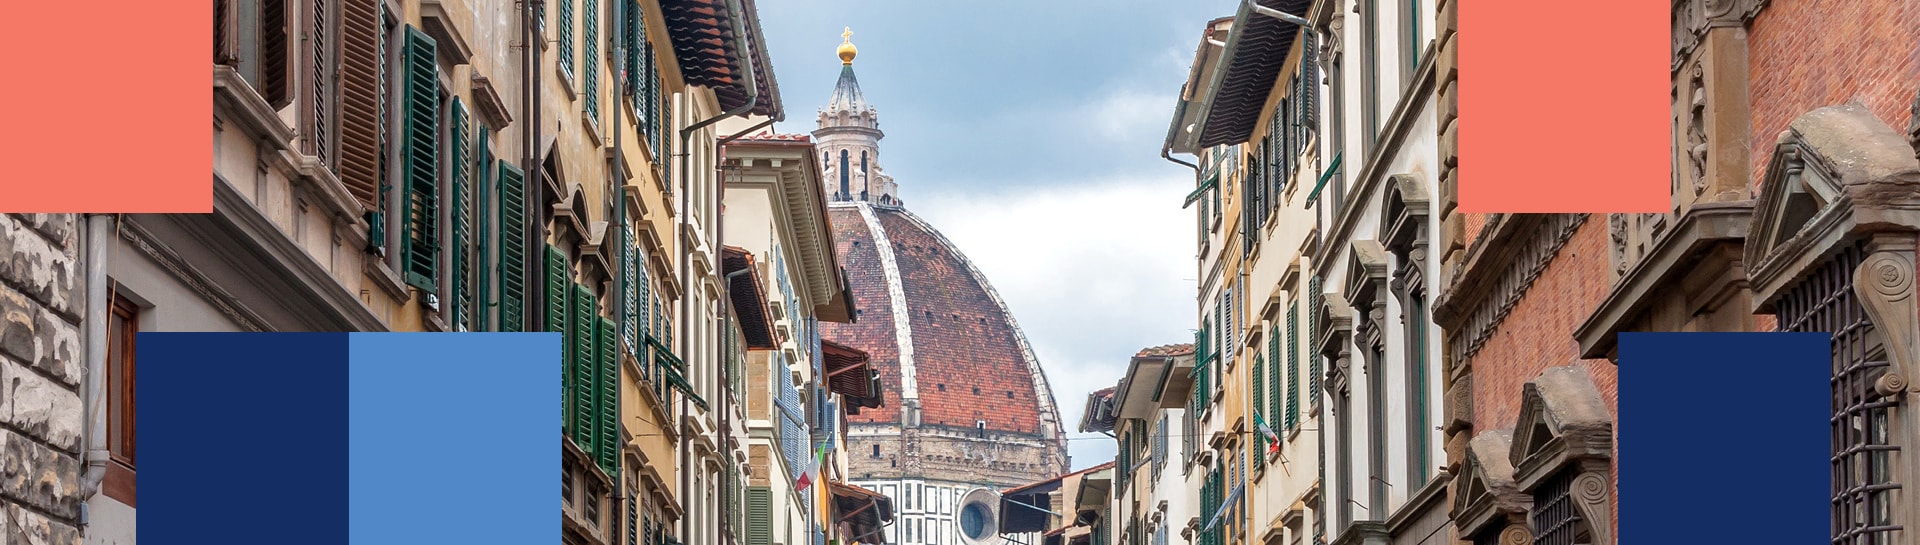 Blick auf die Kuppel von Brunelleschi von einer Straße in Florenz aus